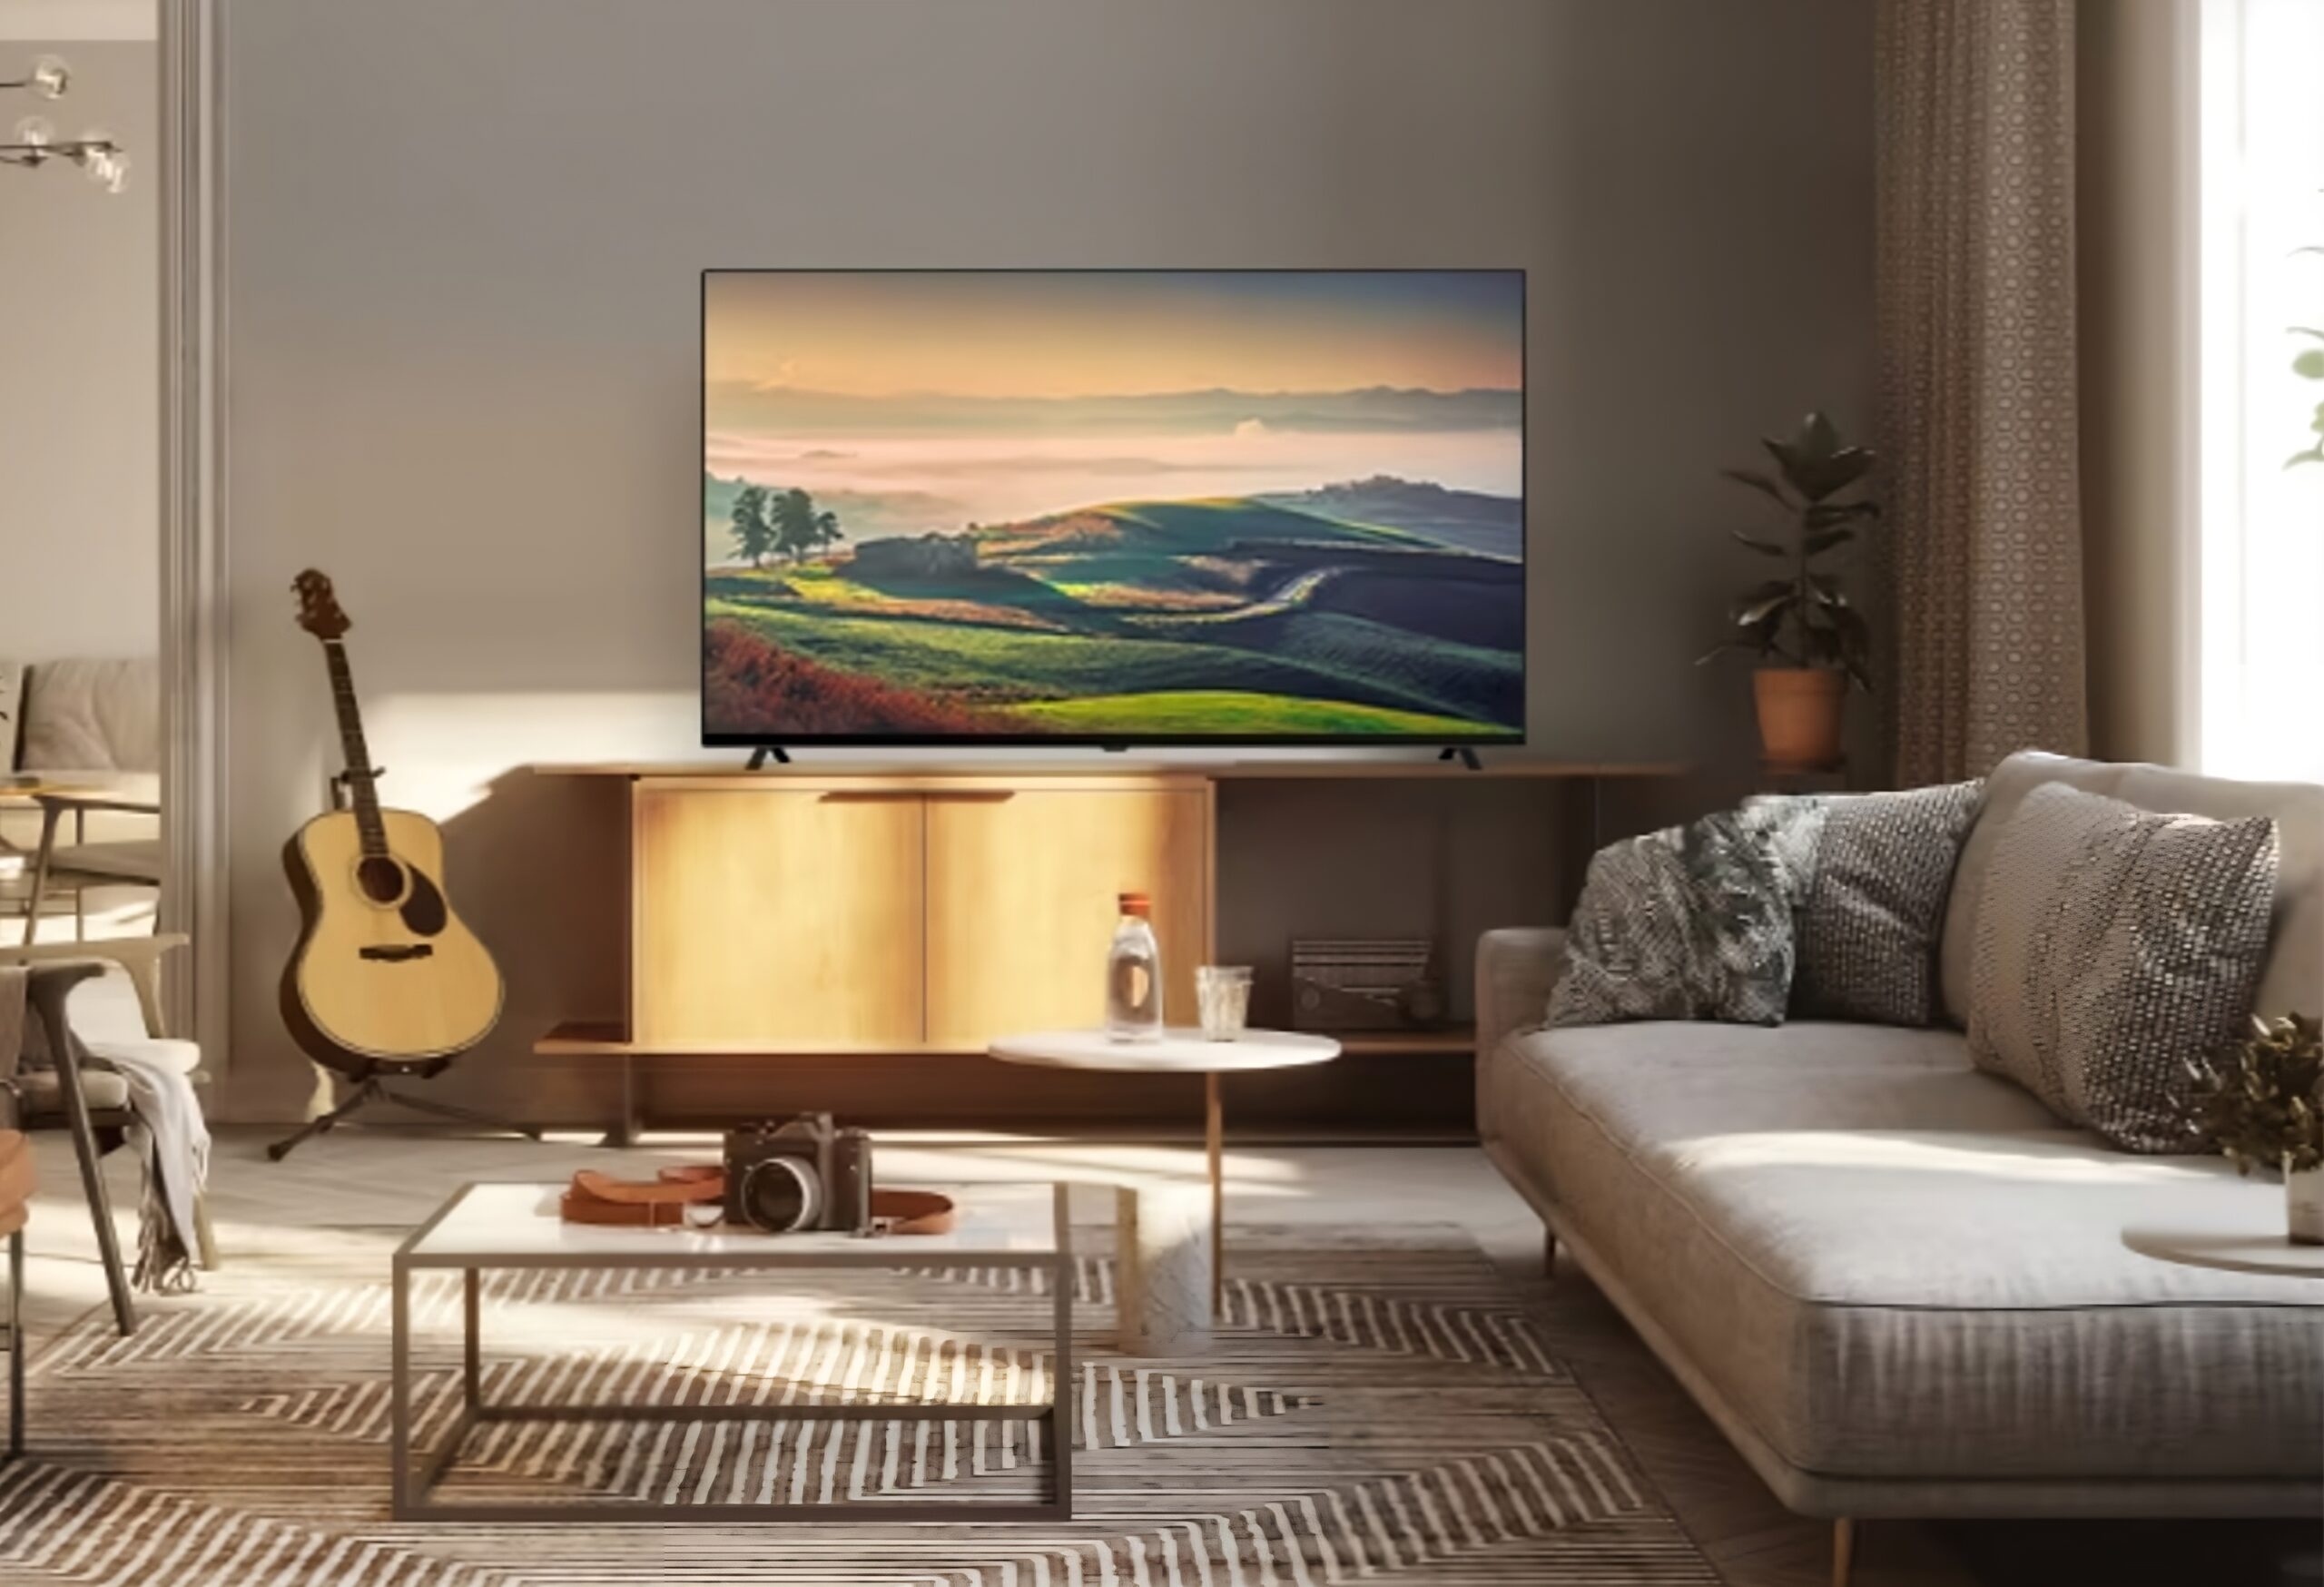 Nowoczesny salon z sofą narożną, dywanem w paski, telewizorem wyświetlającym pejzaż, drewnianą komodą i gitarą akustyczną opartą o ścianę.